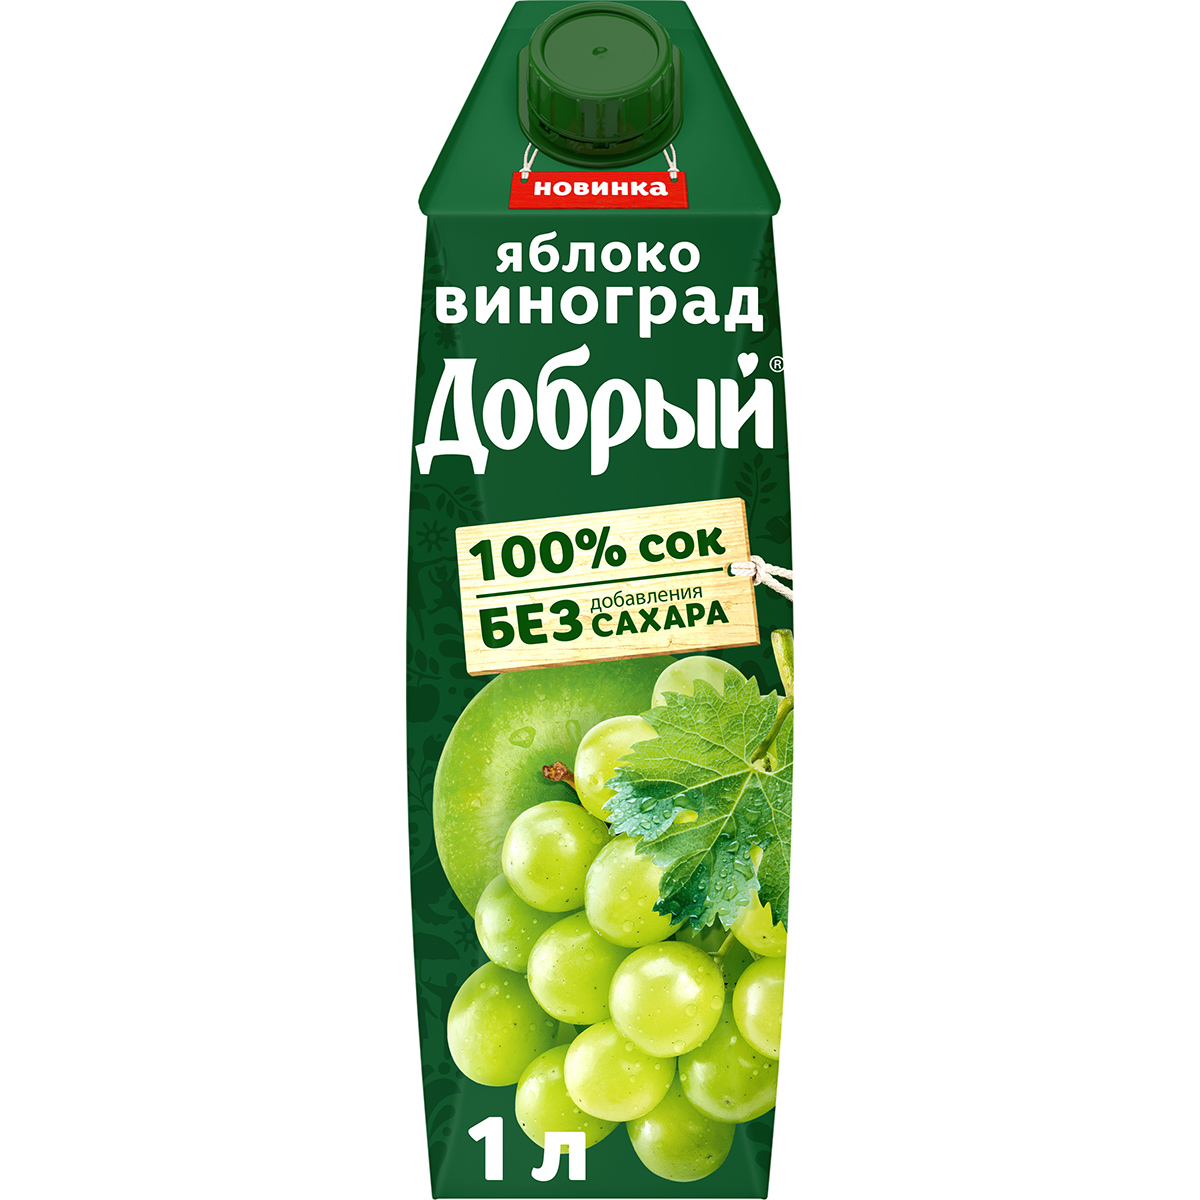 Сок Добрый Яблоко-виноград 1 л сок добрый яблоко цитрус 1 л